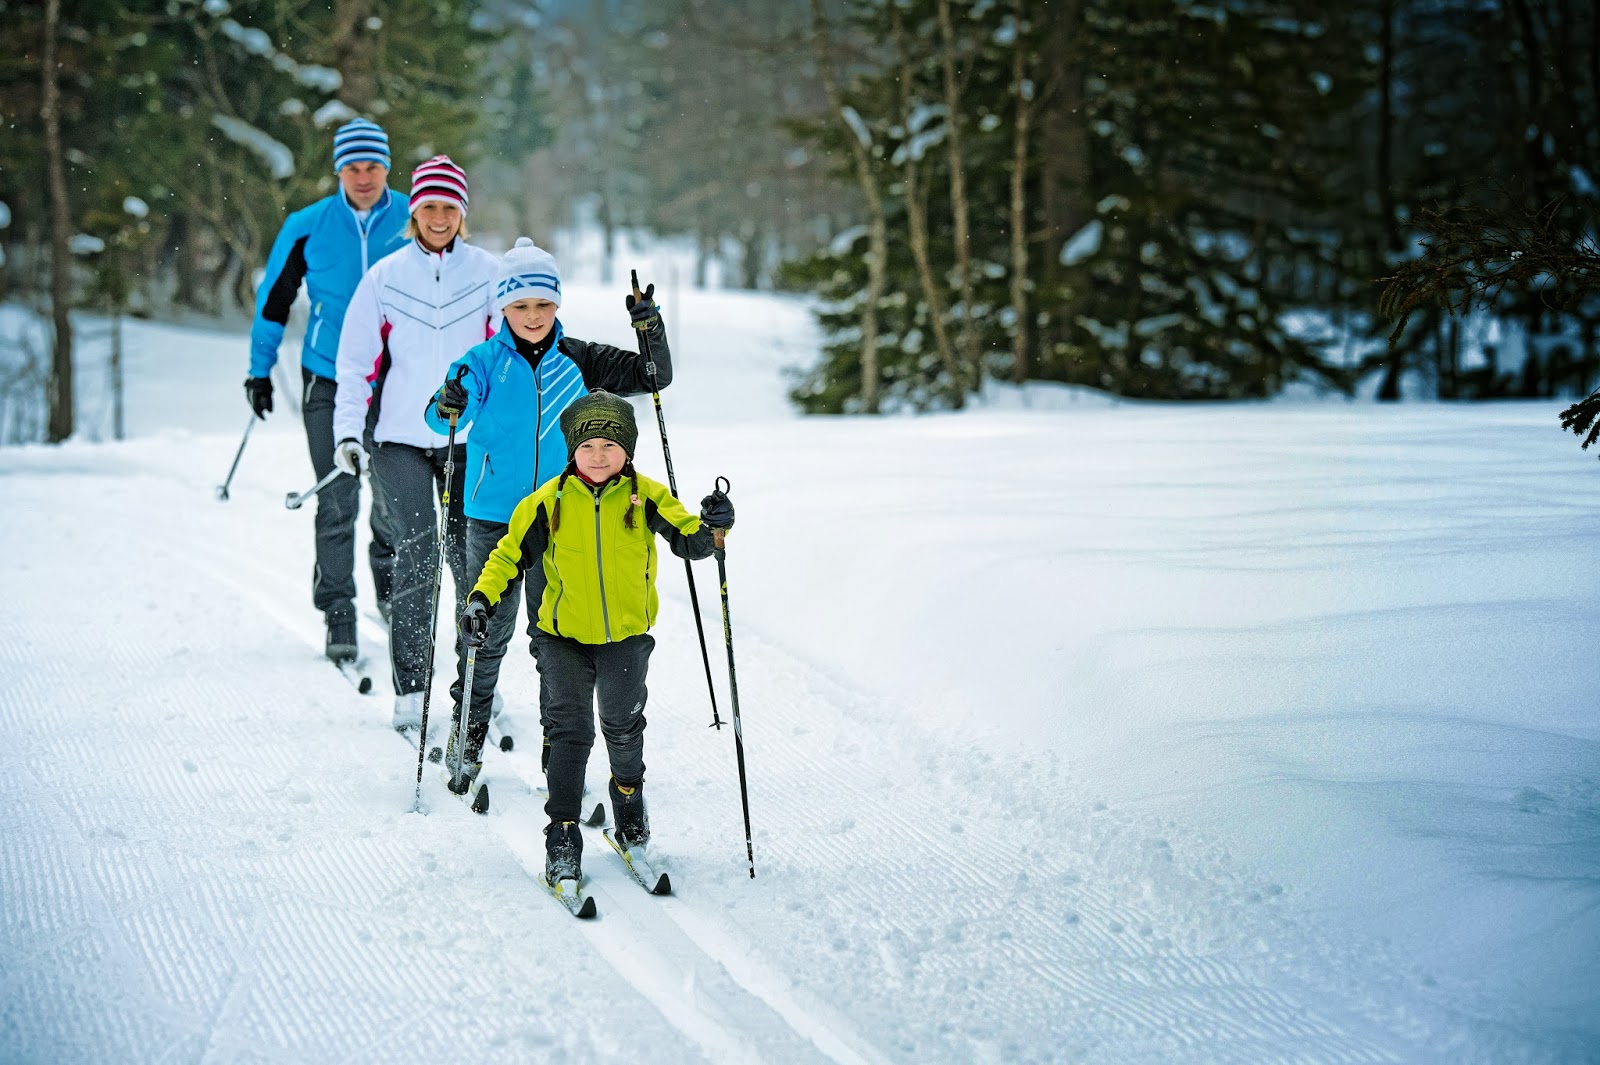 Активным отдыхом является. Семья катается на лыжах. Прогулка на лыжах. Катание на лыжах в лесу. Спорт зимой.